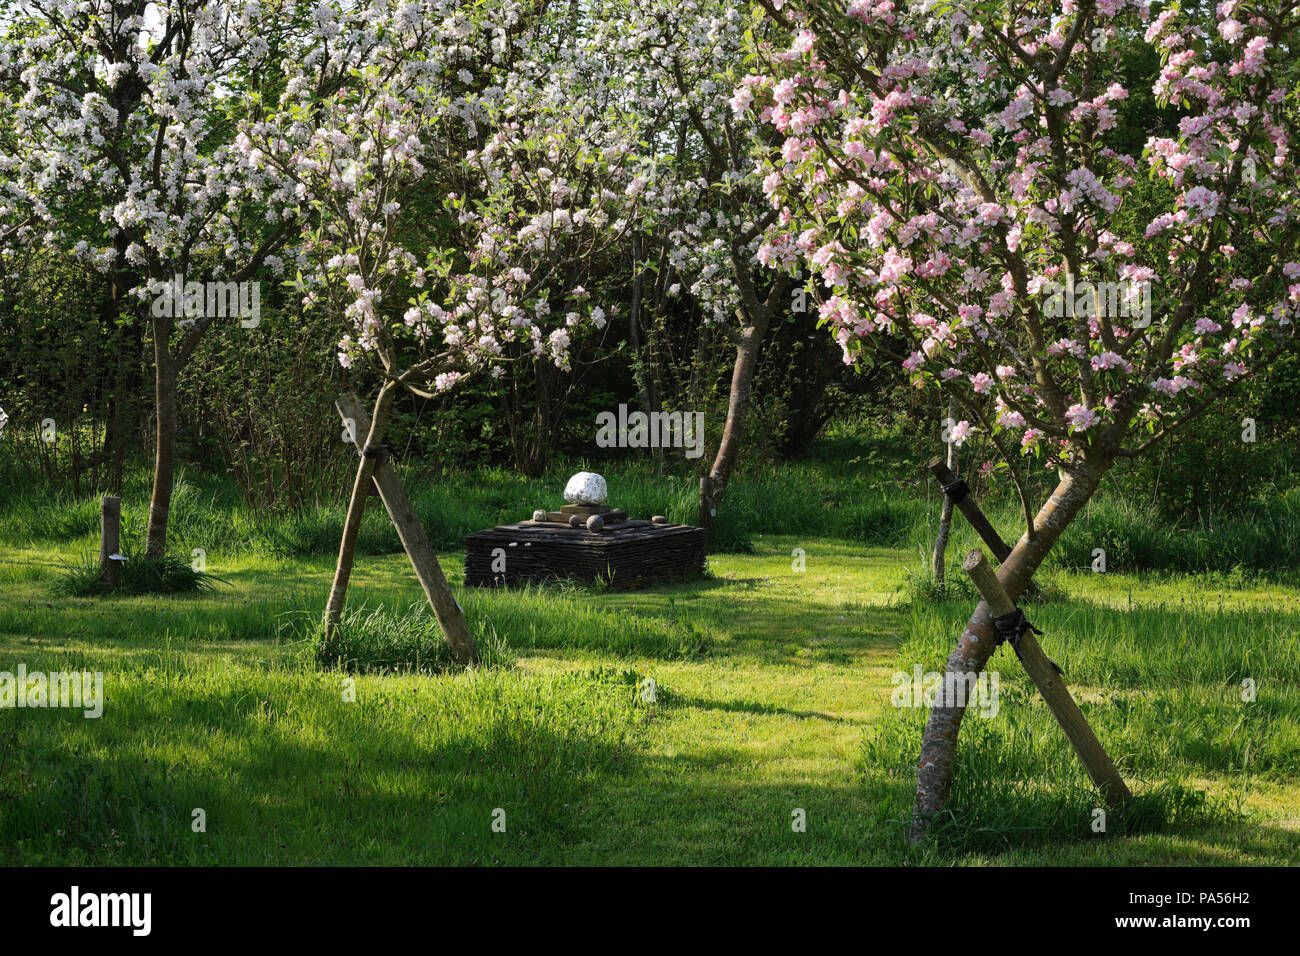 Pommiers en fleurs dessert au début de mai dans un petit verger dans un jardin près de Caernarfon, Pays de Galles, Royaume-Uni. L'autel est constitué d'ardoises de toiture réutilisés. Banque D'Images